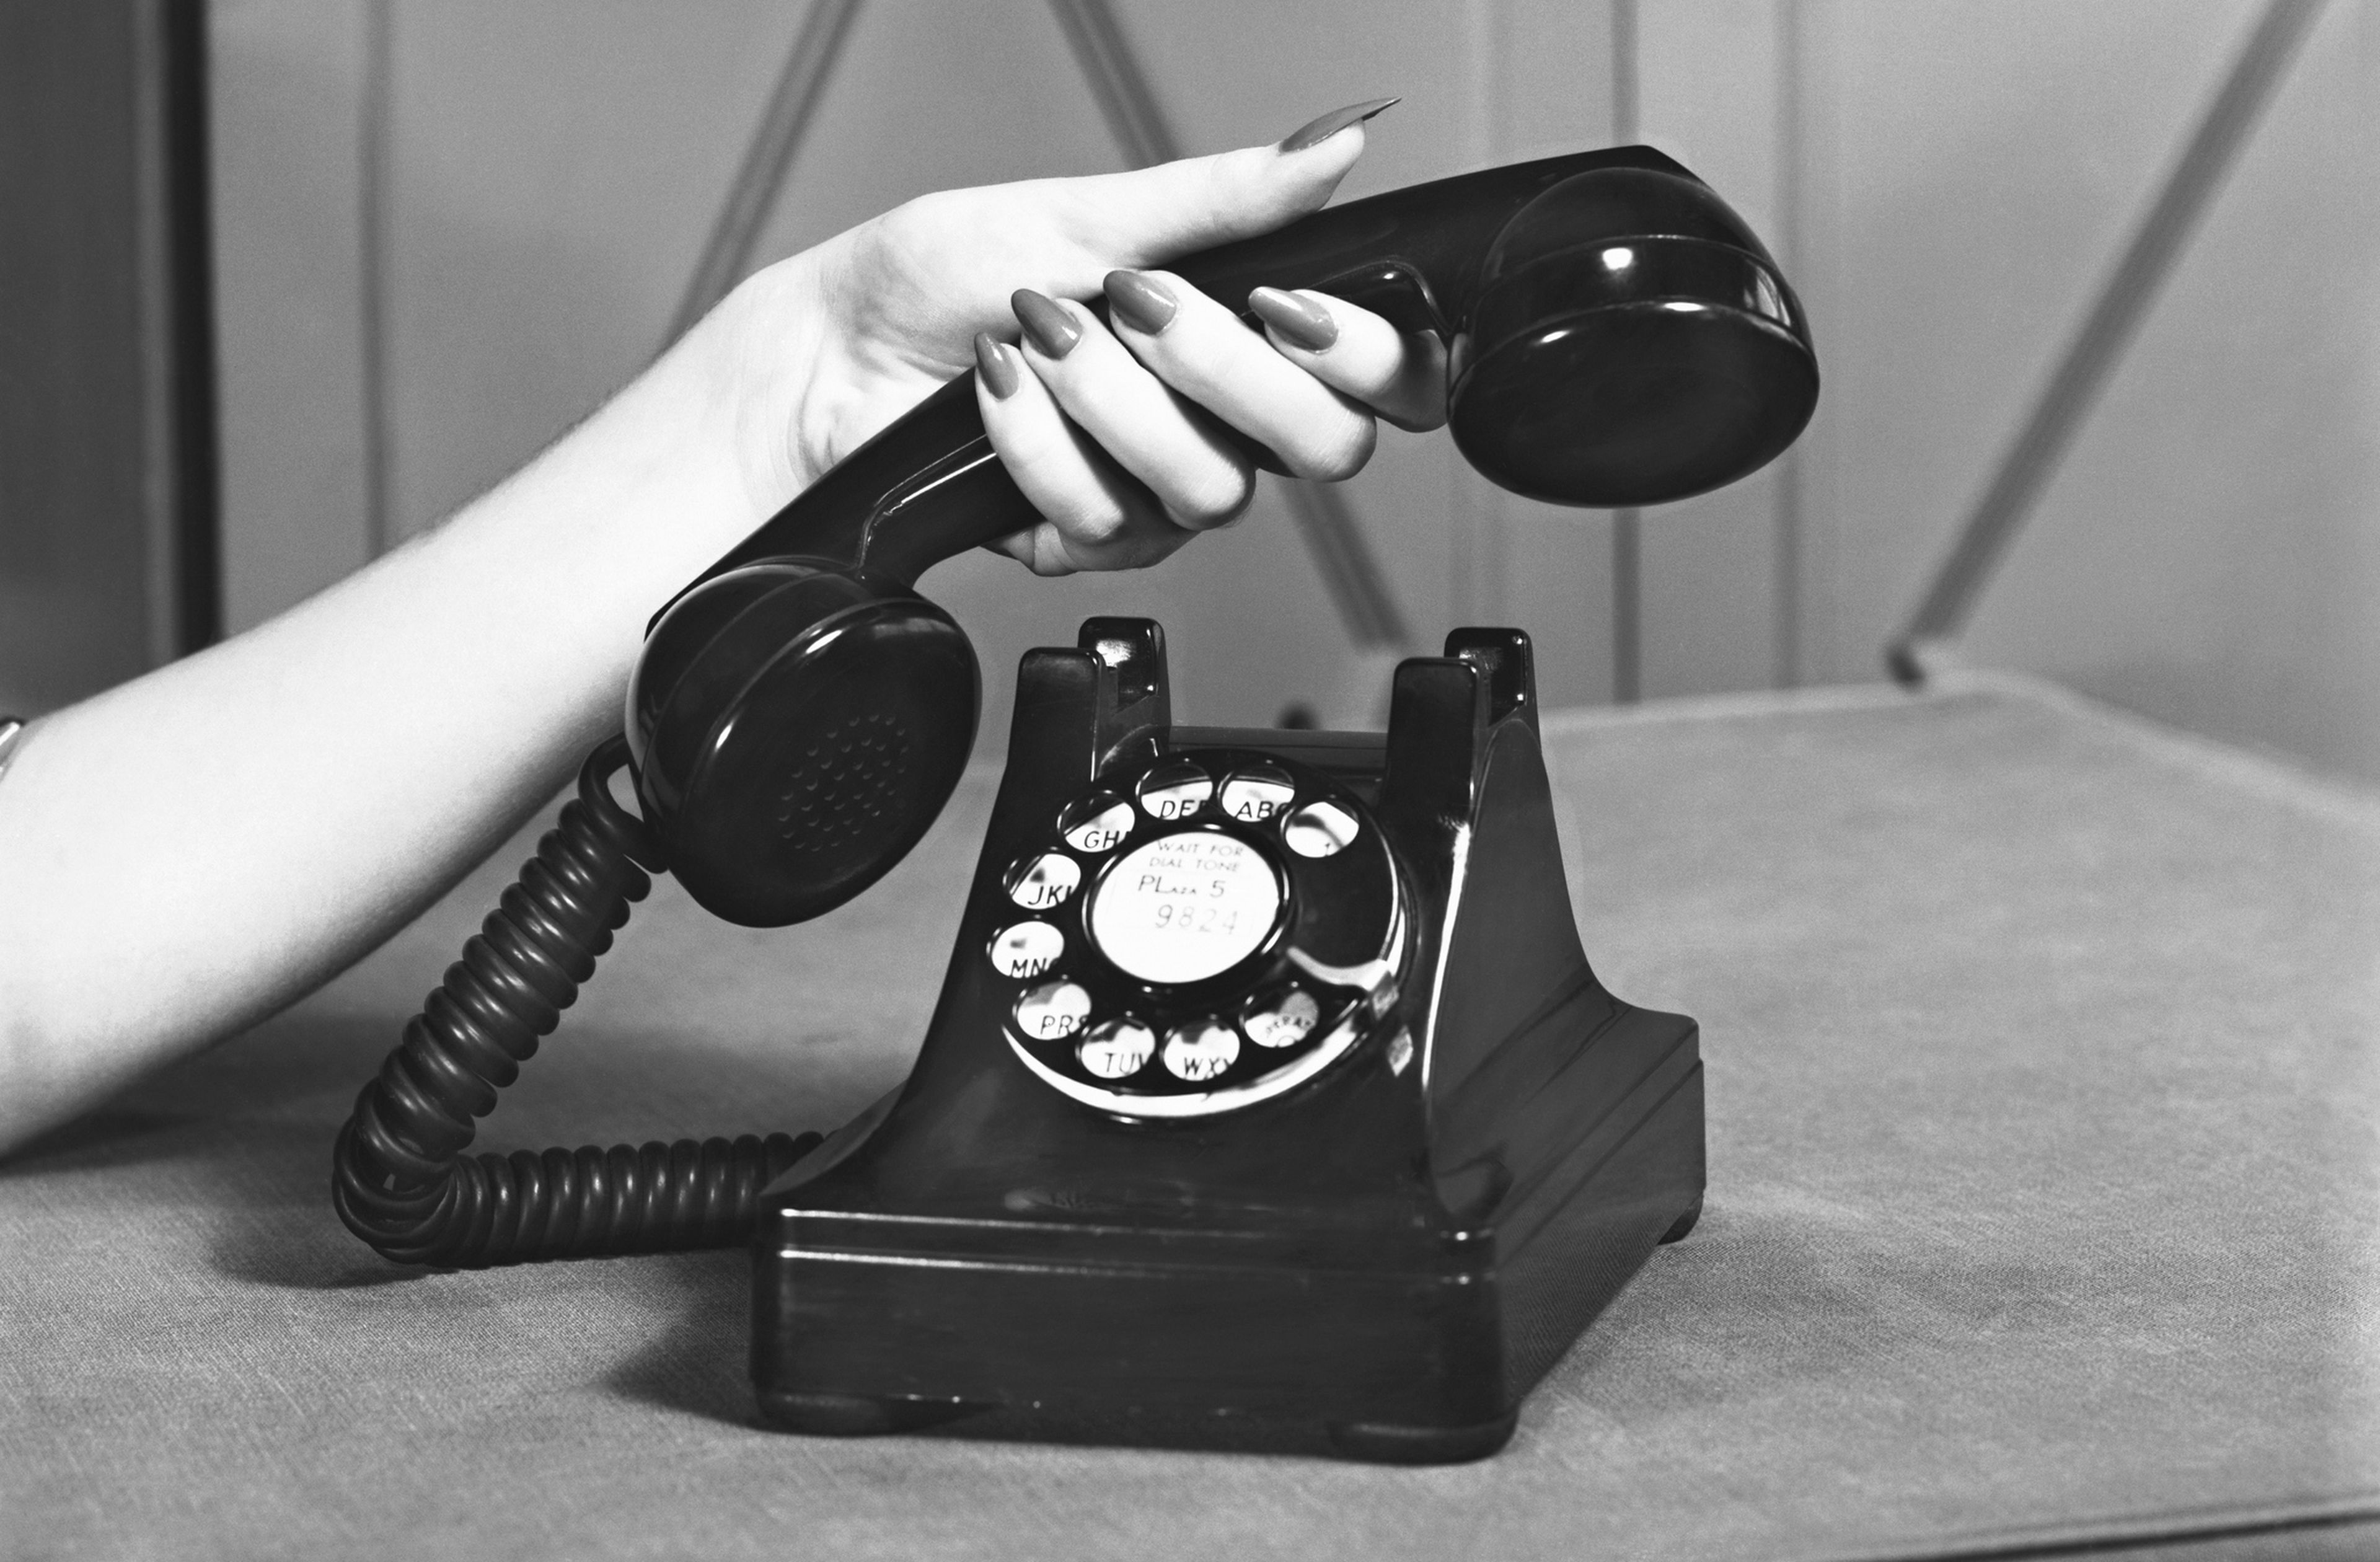 Un empleado de una operadora describe con todo detalle las funciones de un smartphone... ¡en 1953!